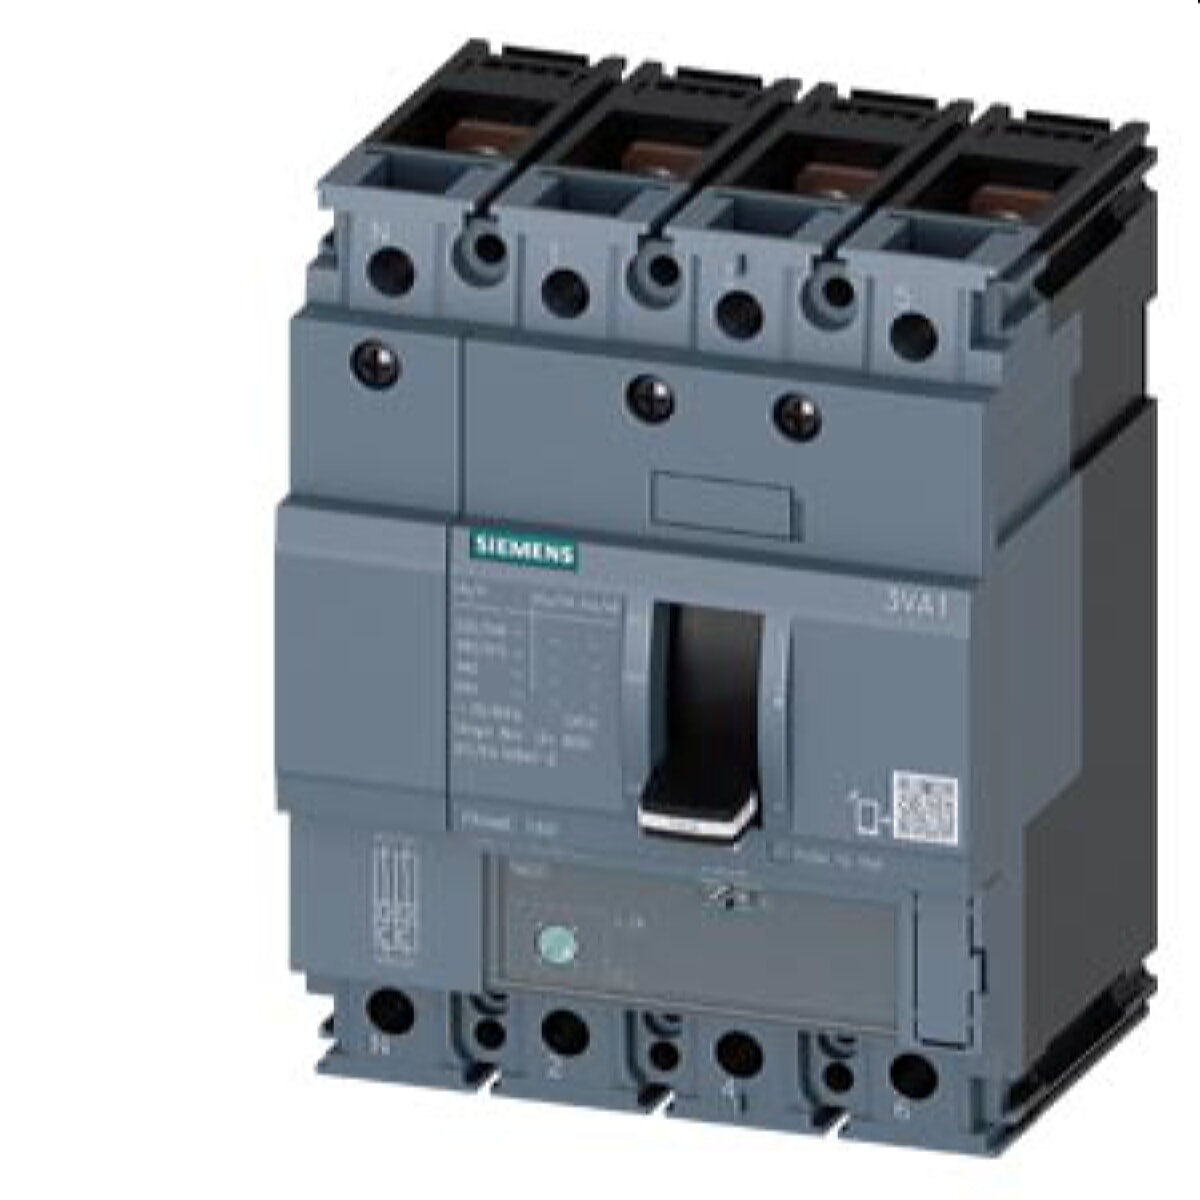 Siemens Leistungsschalter 3VA1 70kA ATFM112-160A 3VA1116-6FE42-0AA0